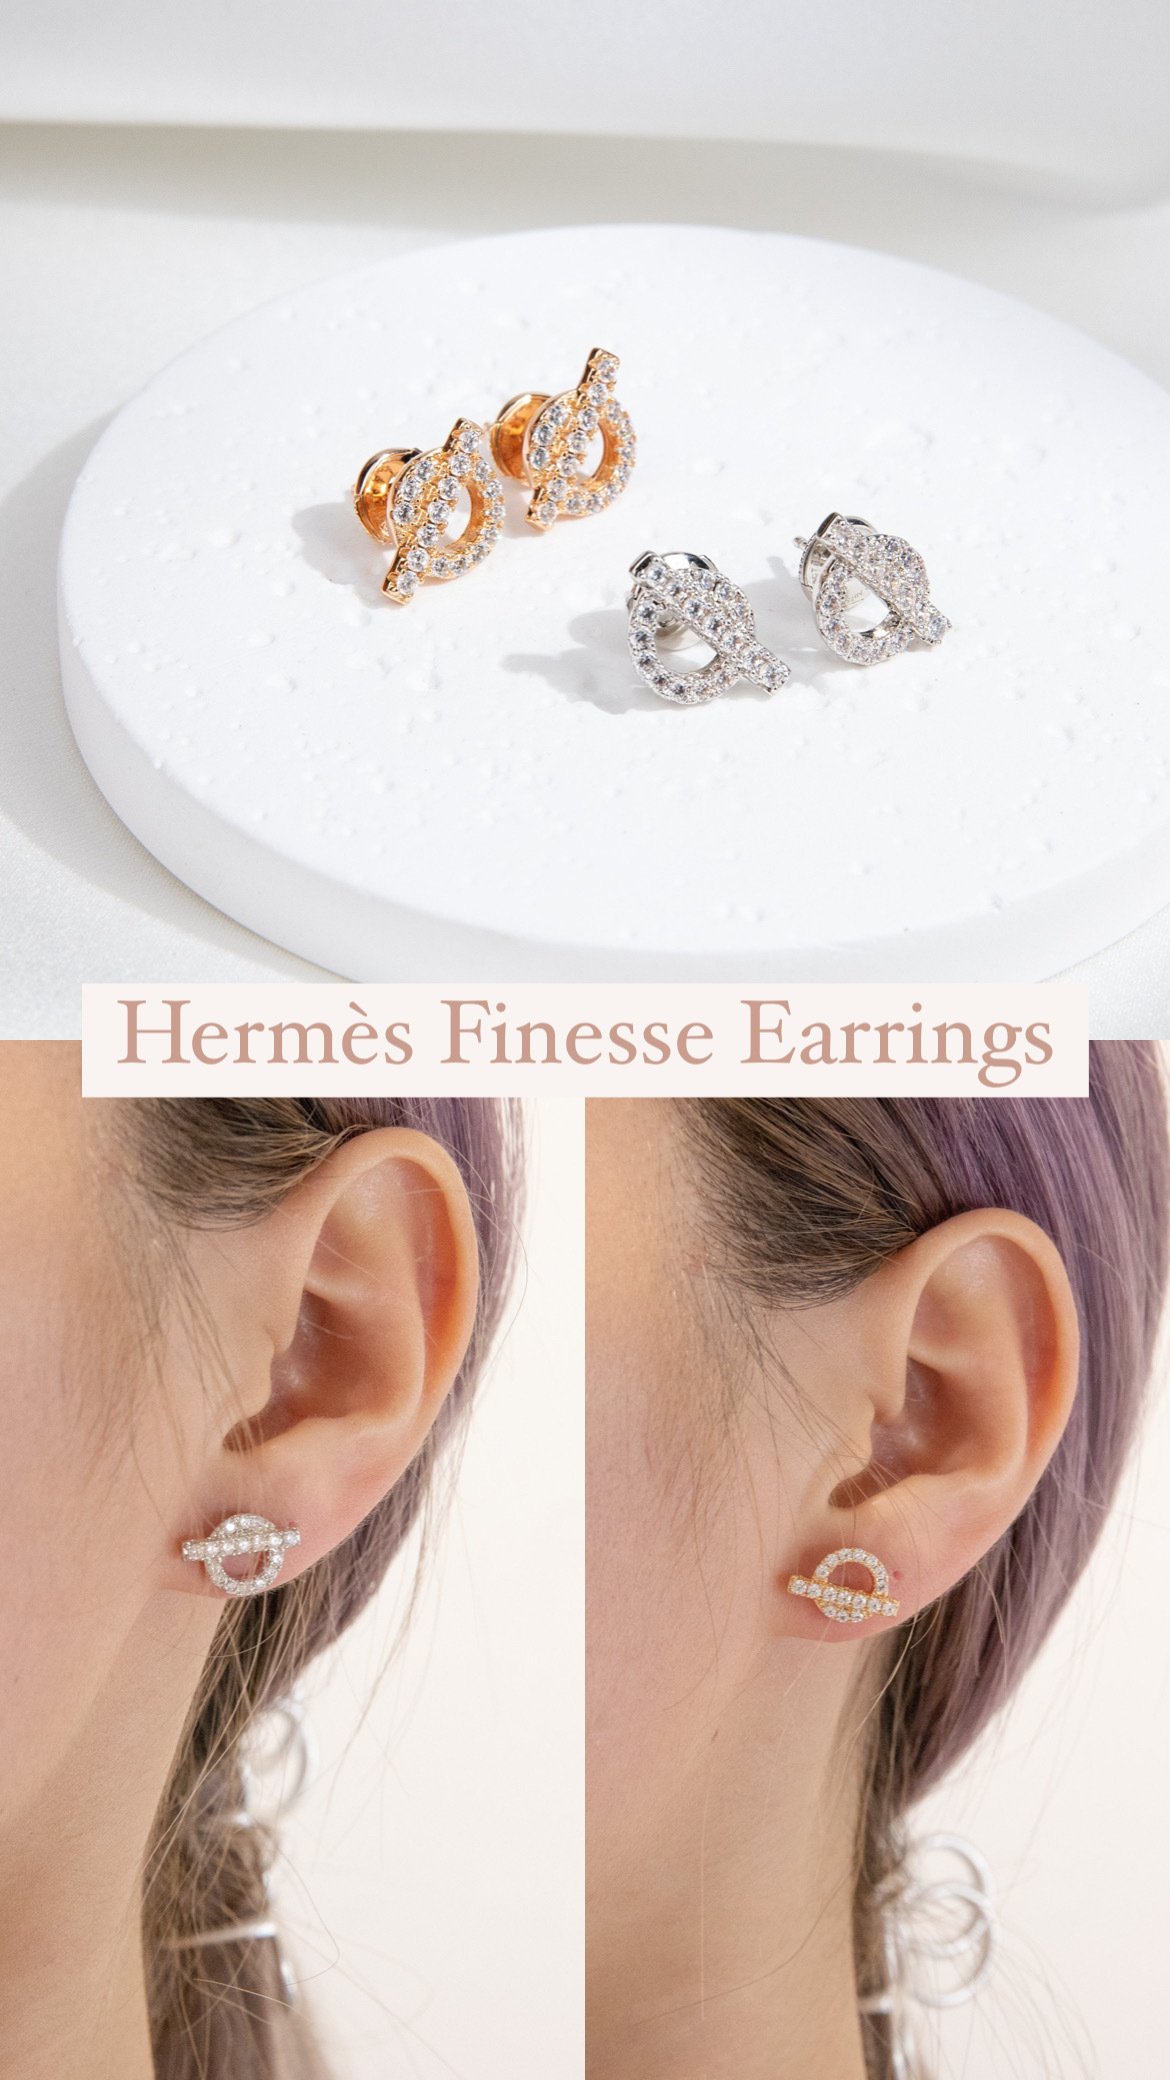 Finesse earrings